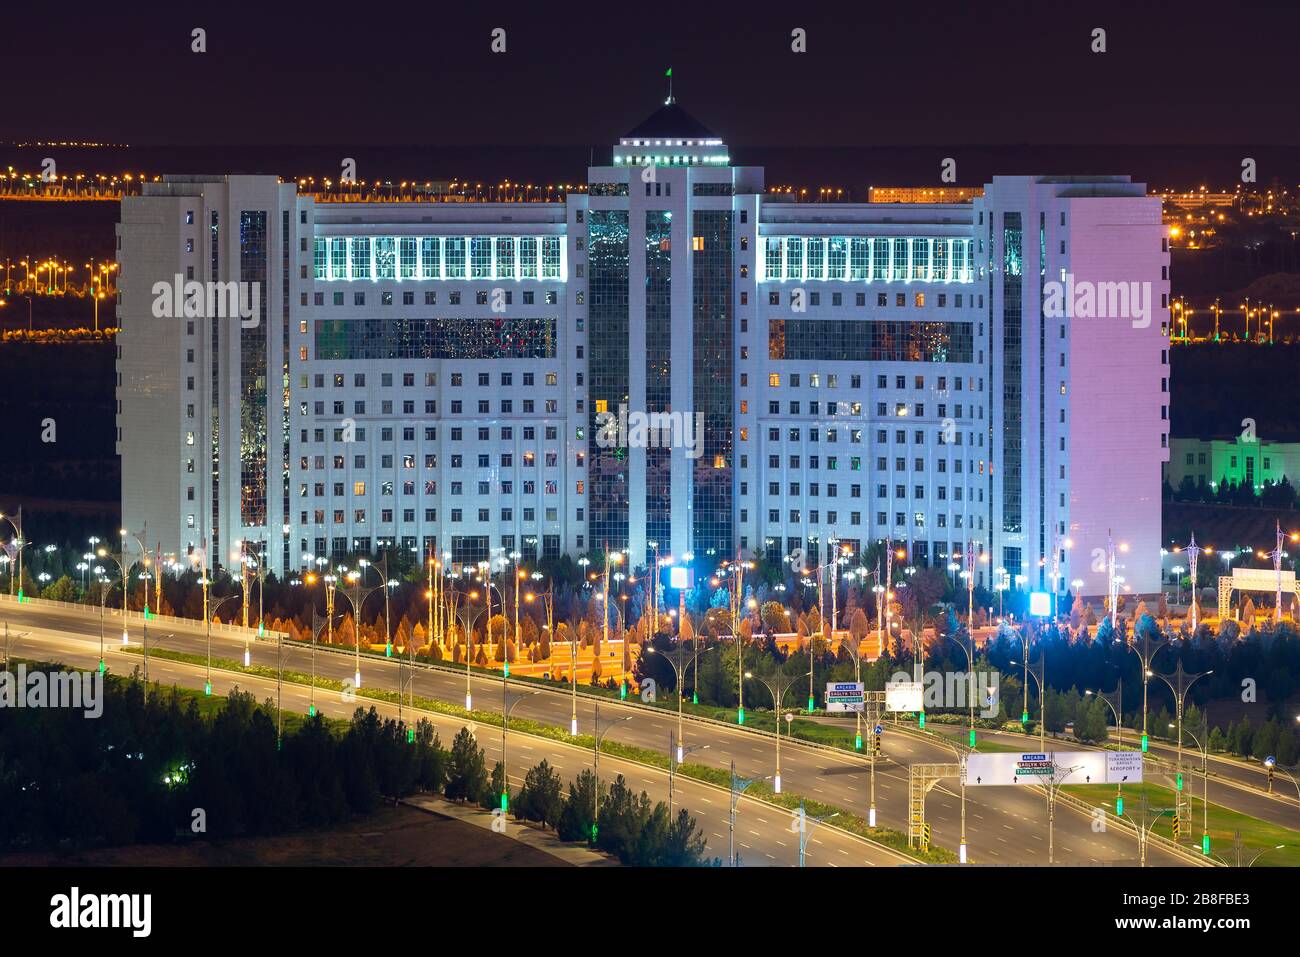 Imponente edificio curvo in marmo bianco ad Ashgabat, Turkmenistan. Empty Archabil Highway in primo piano con bei pali di lampada in una città esotica. Foto Stock